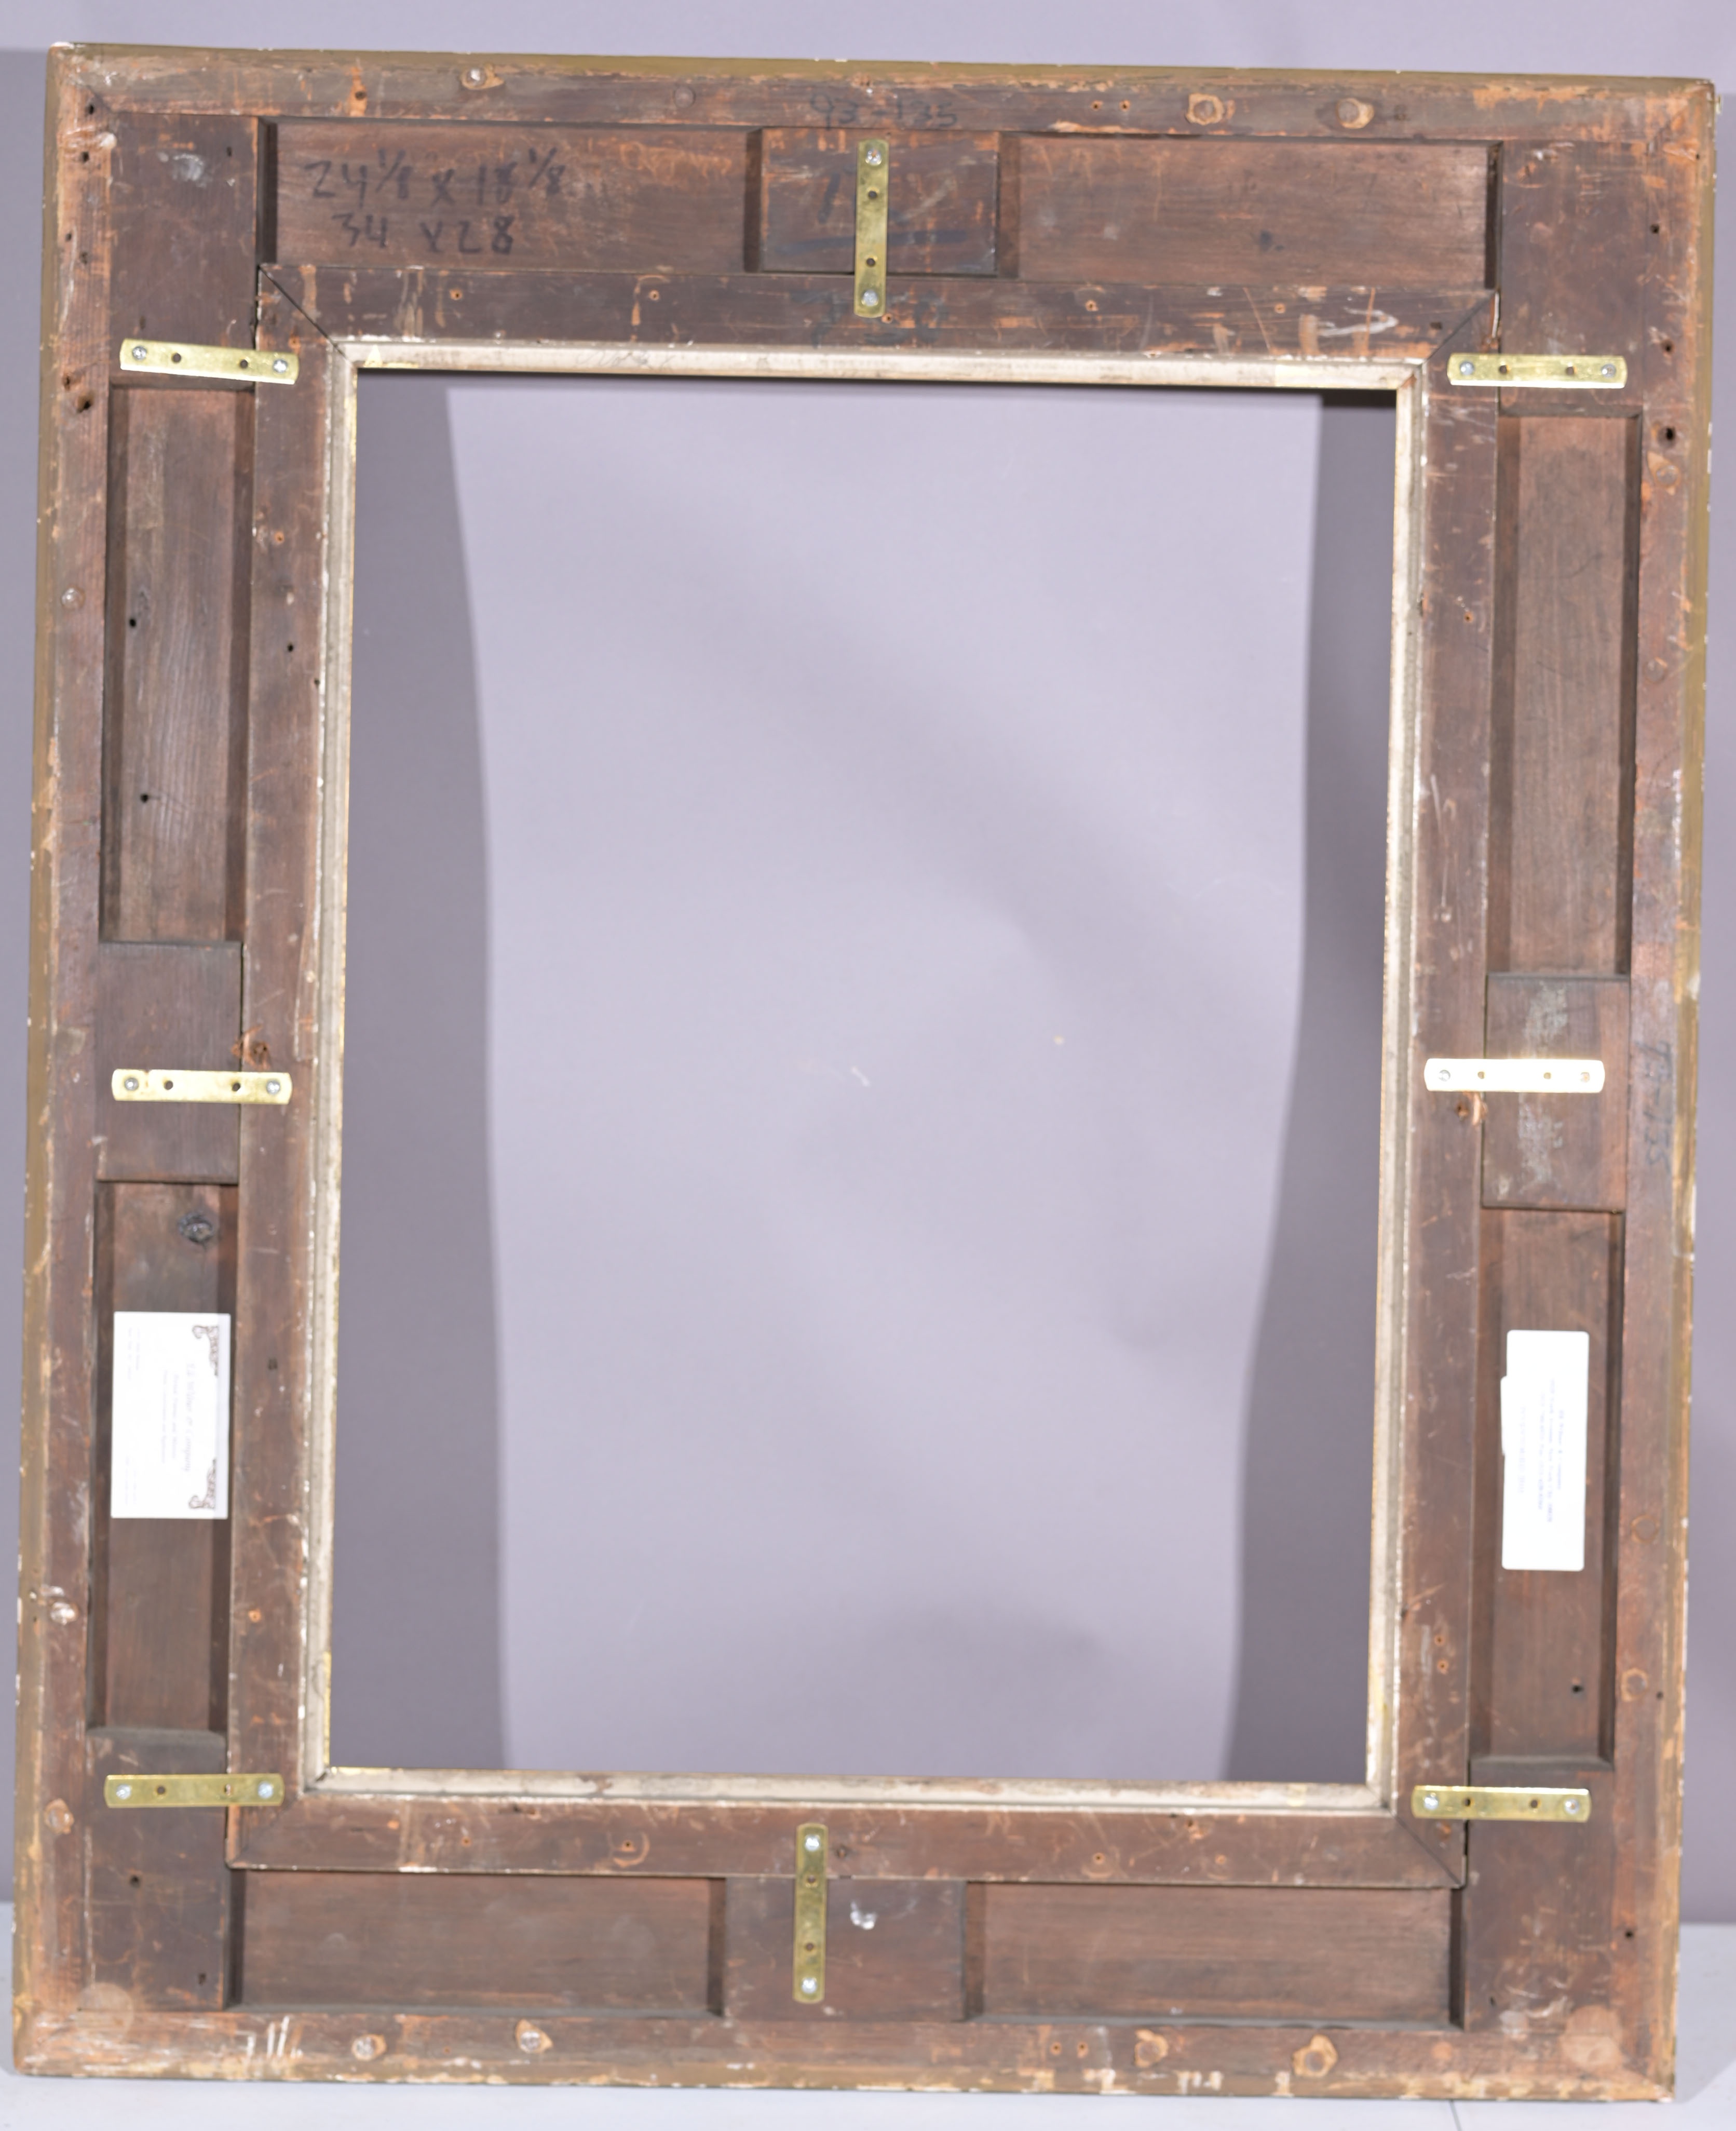 English 19th C Gilt Wood Frame - 24 1/8 x 18 1/8 - Image 8 of 8